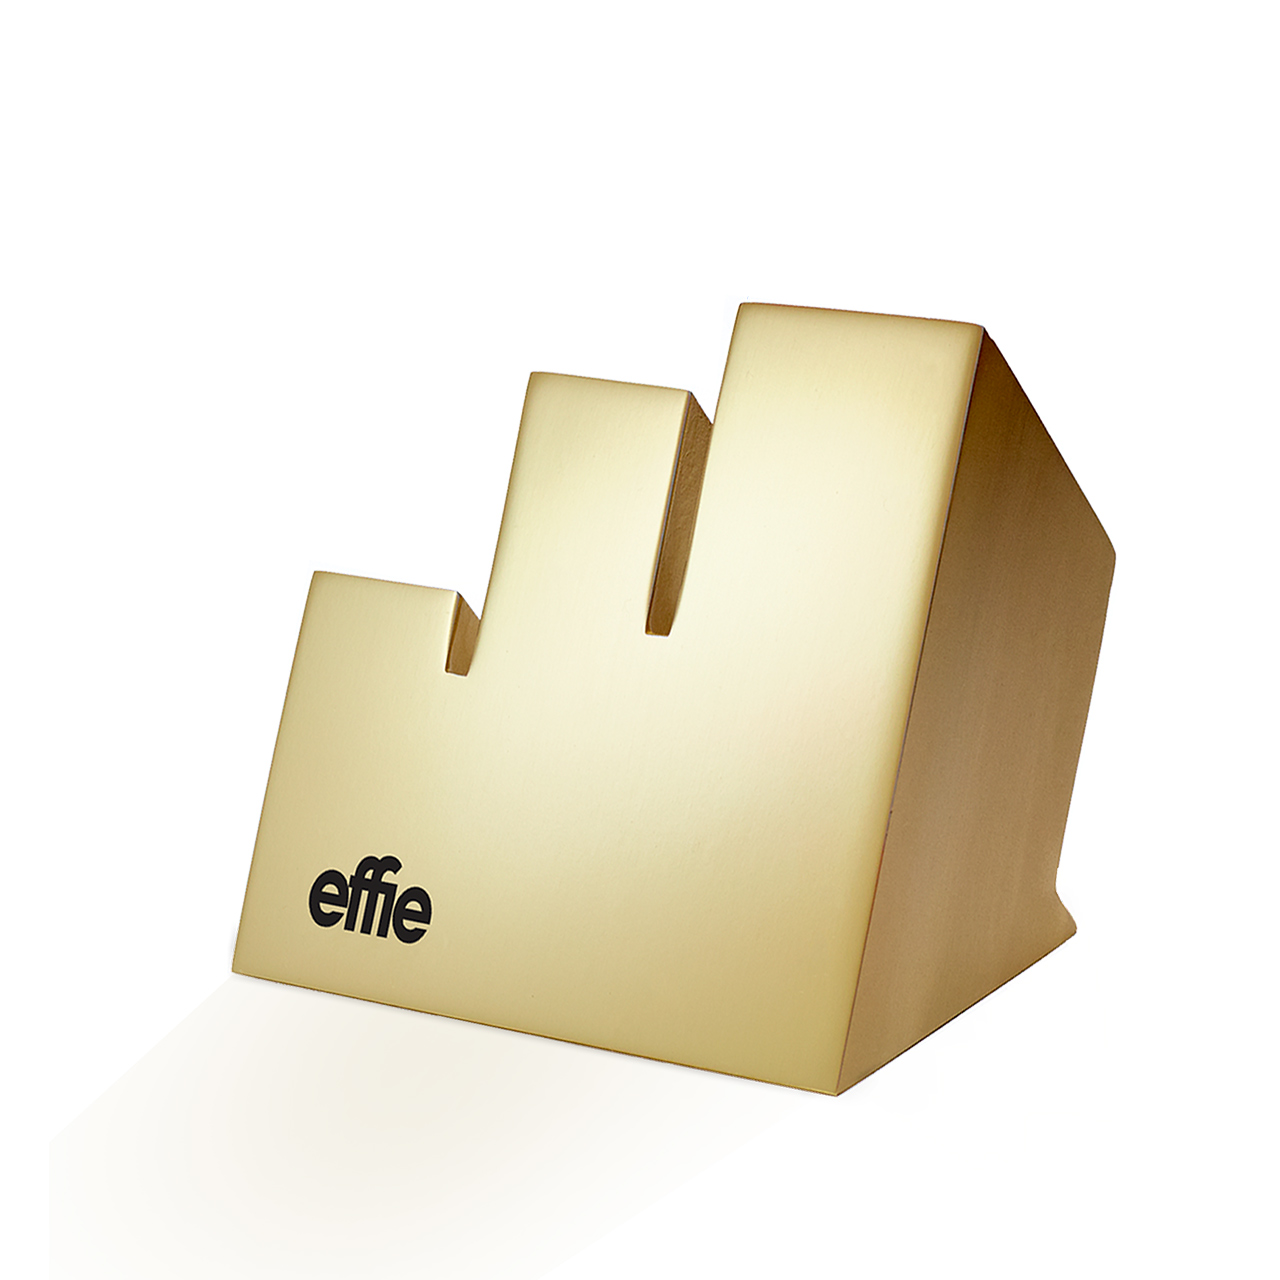 Effie in Gold